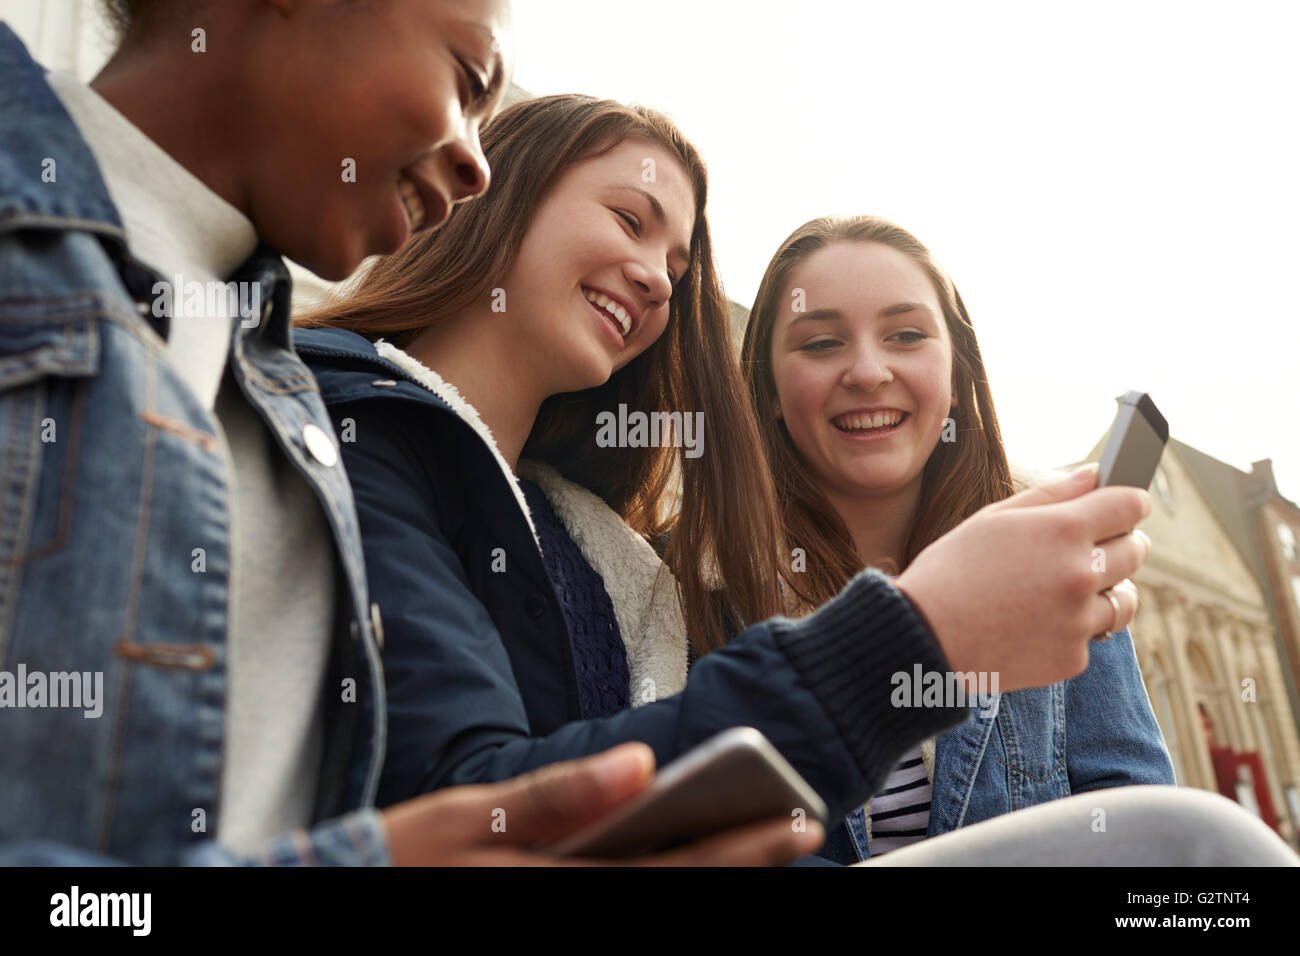 Les jeunes filles à l'aide de leur téléphone mobile en milieu urbain Banque D'Images